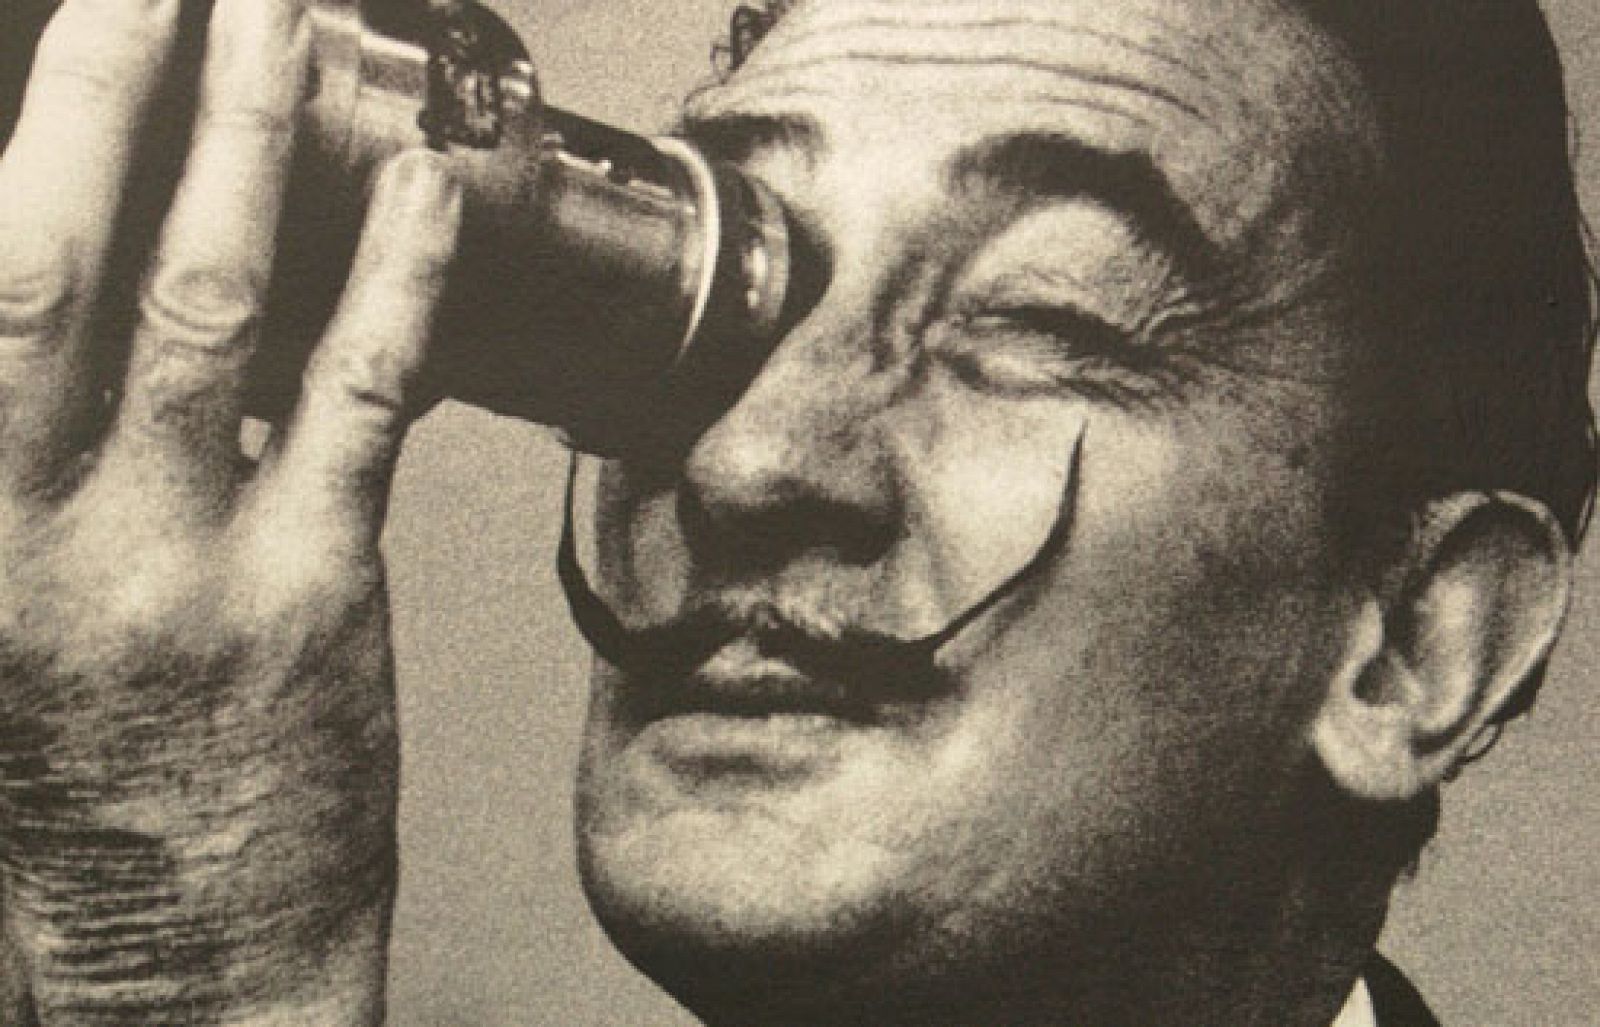 ¿Te acuerdas? - 20 años de la muerte de Dalí